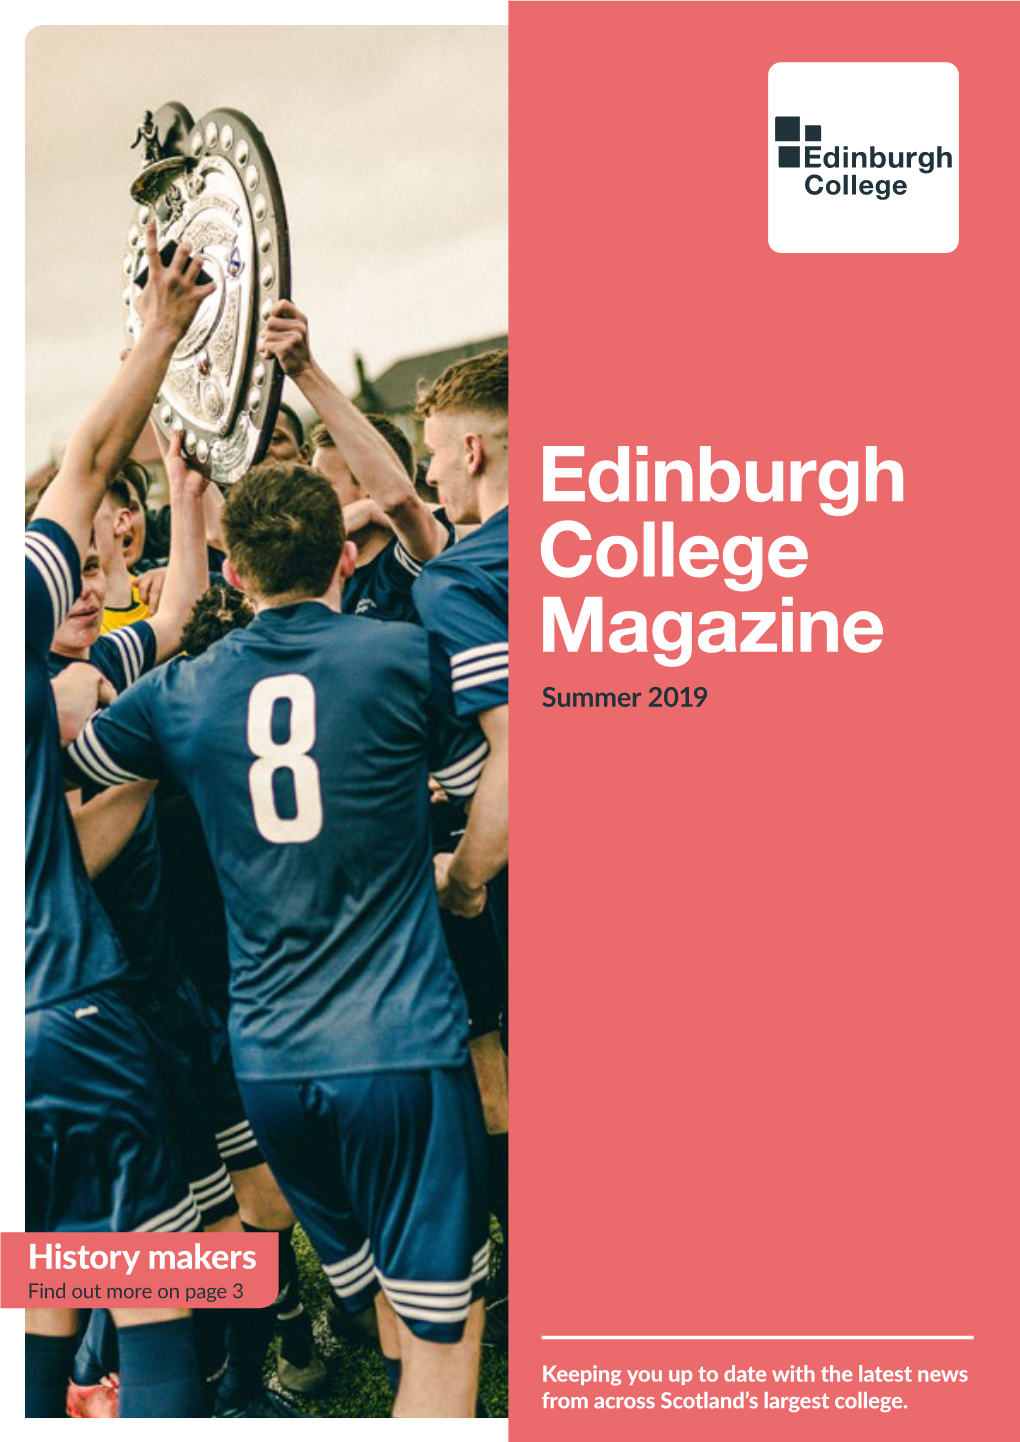 Edinburgh College Magazine Summer 2019